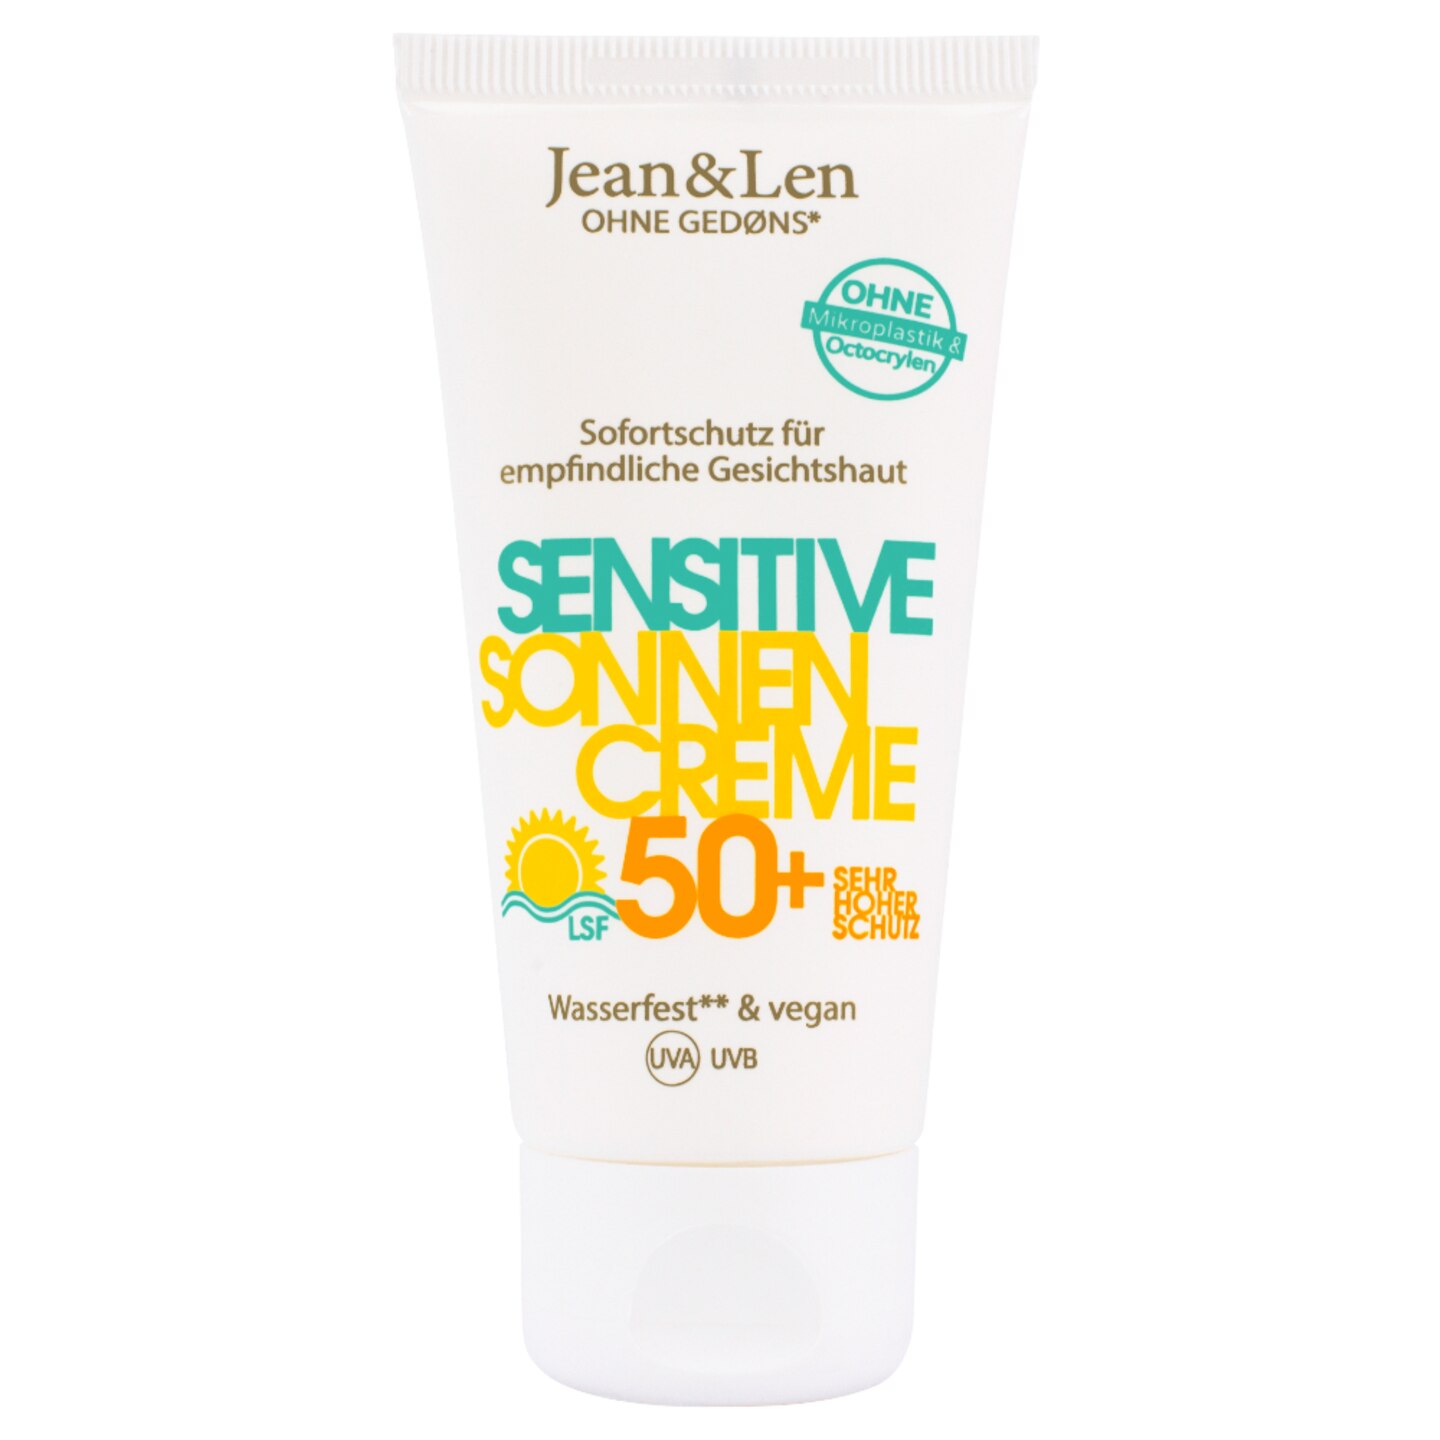 Sanft: "Sensitiv Sonnencreme Gesicht mit LFS 50“ von Jean & Len, ungefähr 9 Euro.